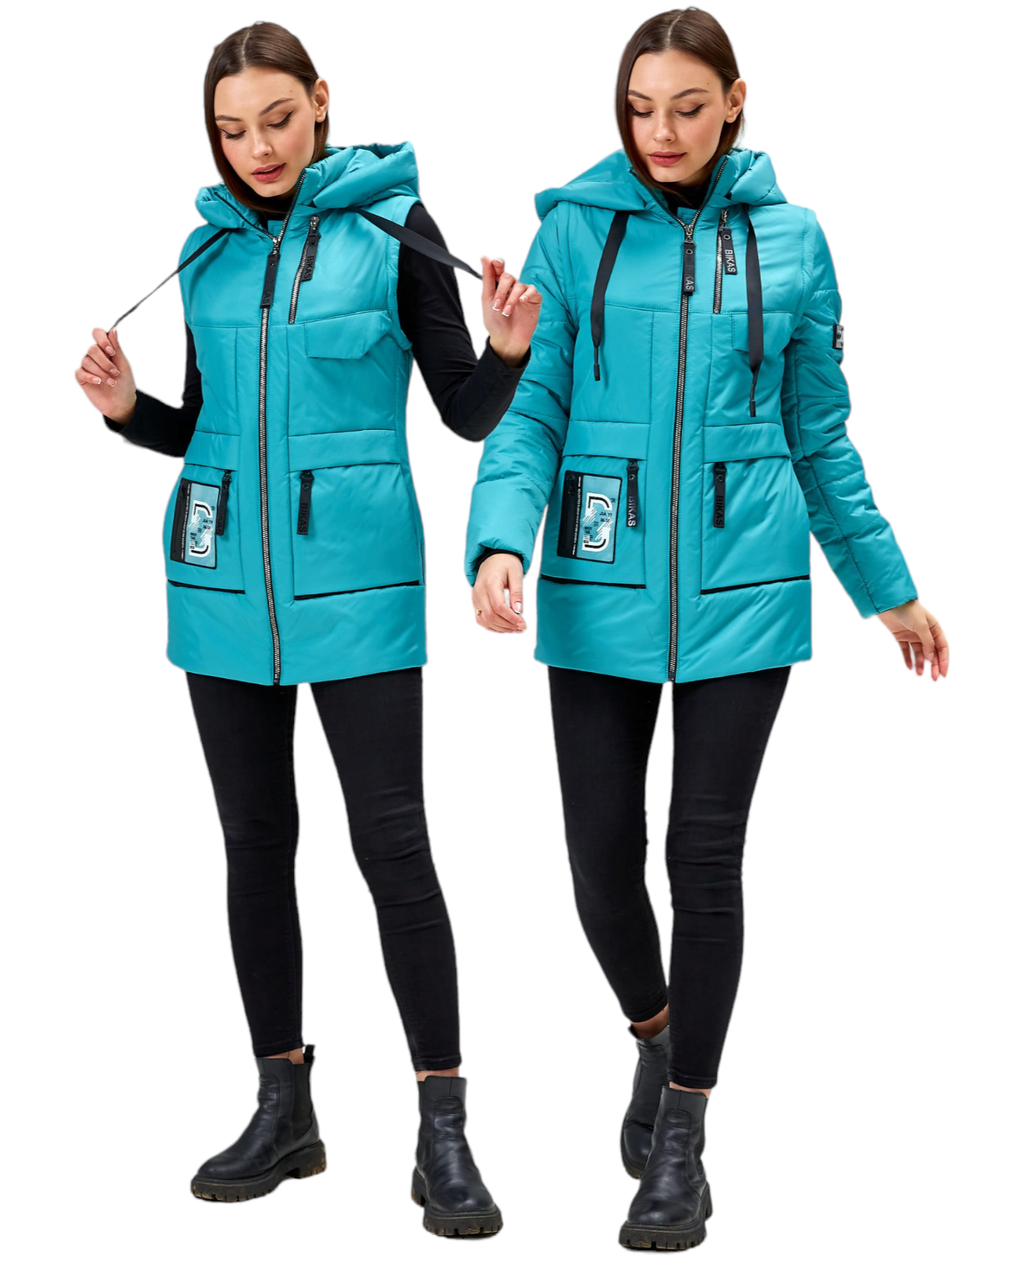 Модні жіночі куртки жилети демісезонні з капюшоном розміри 44-58